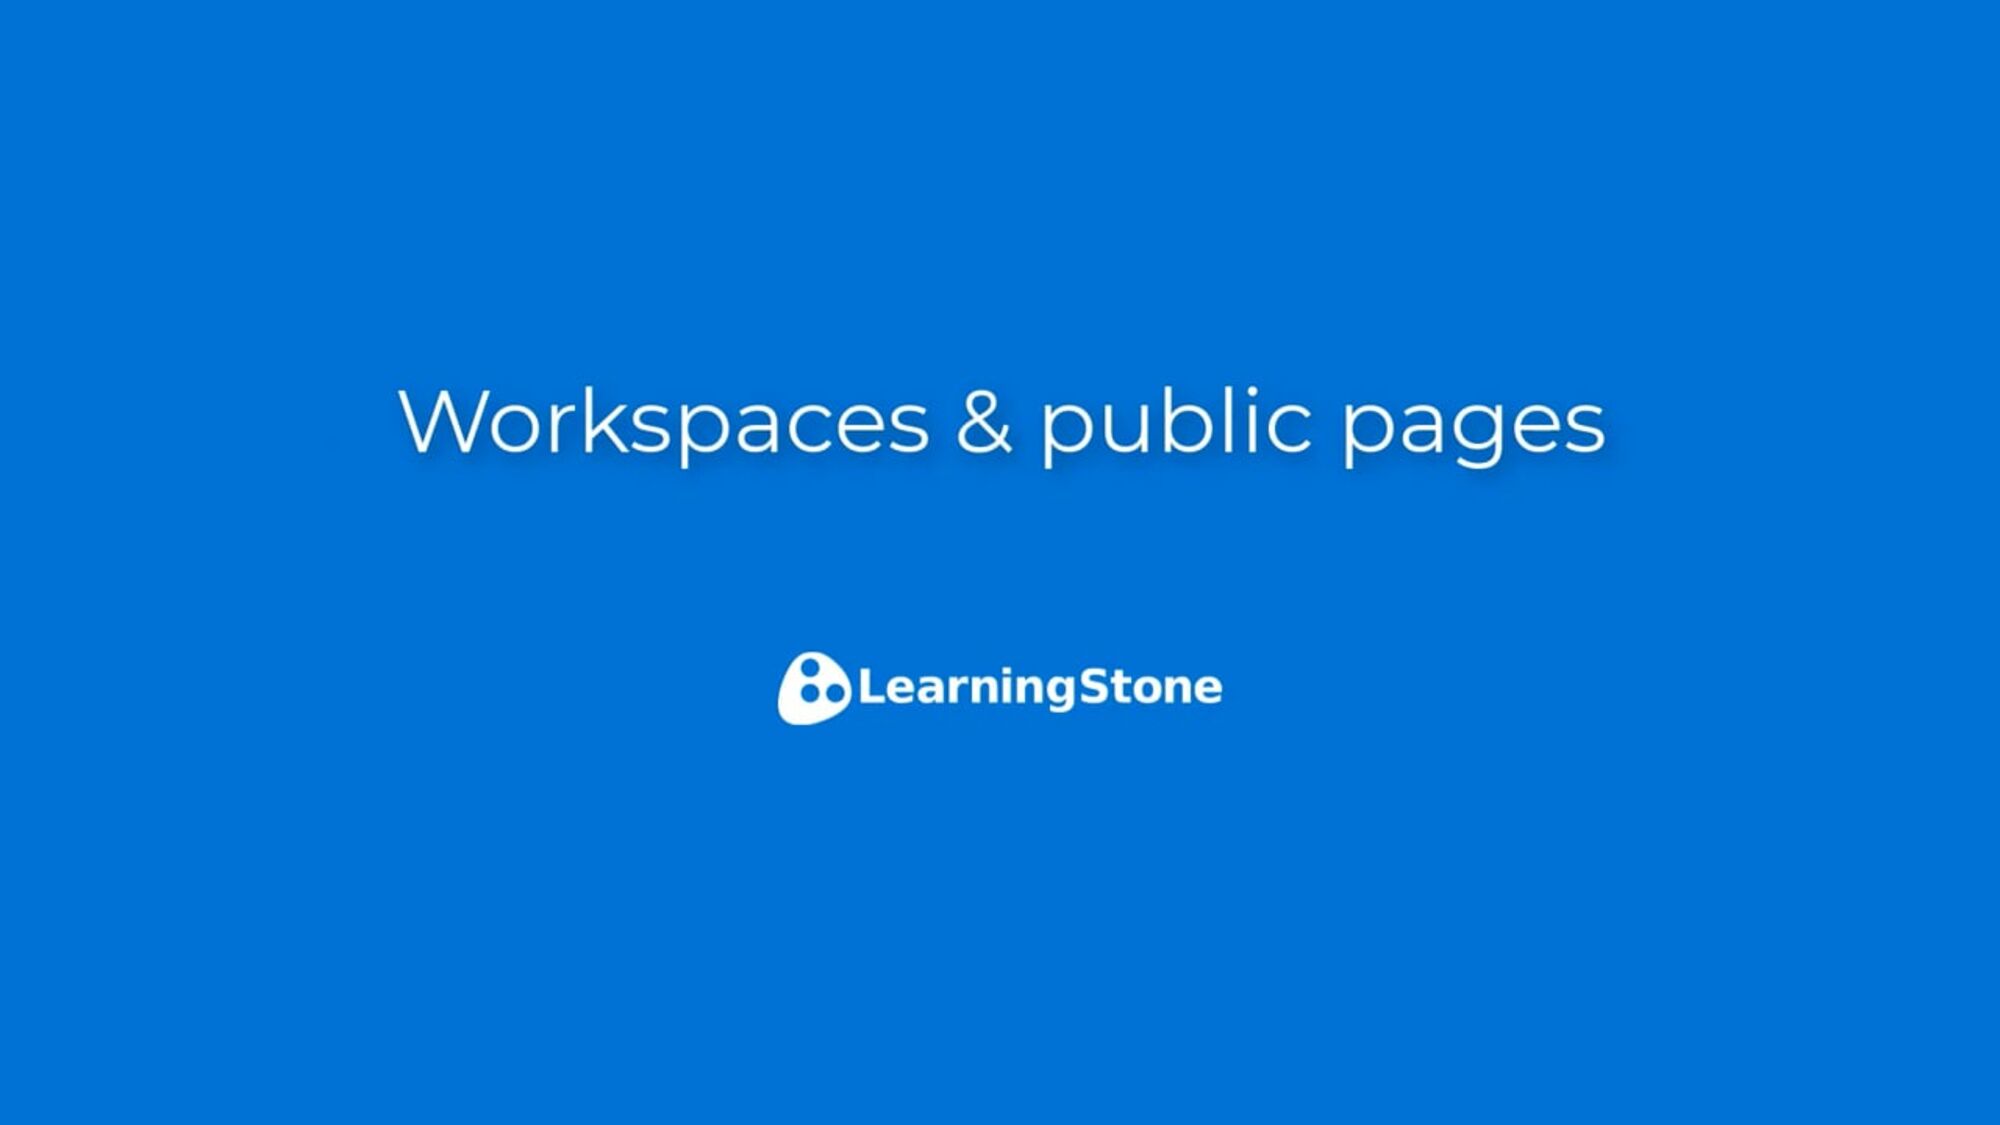 1. Workspaces & public pages